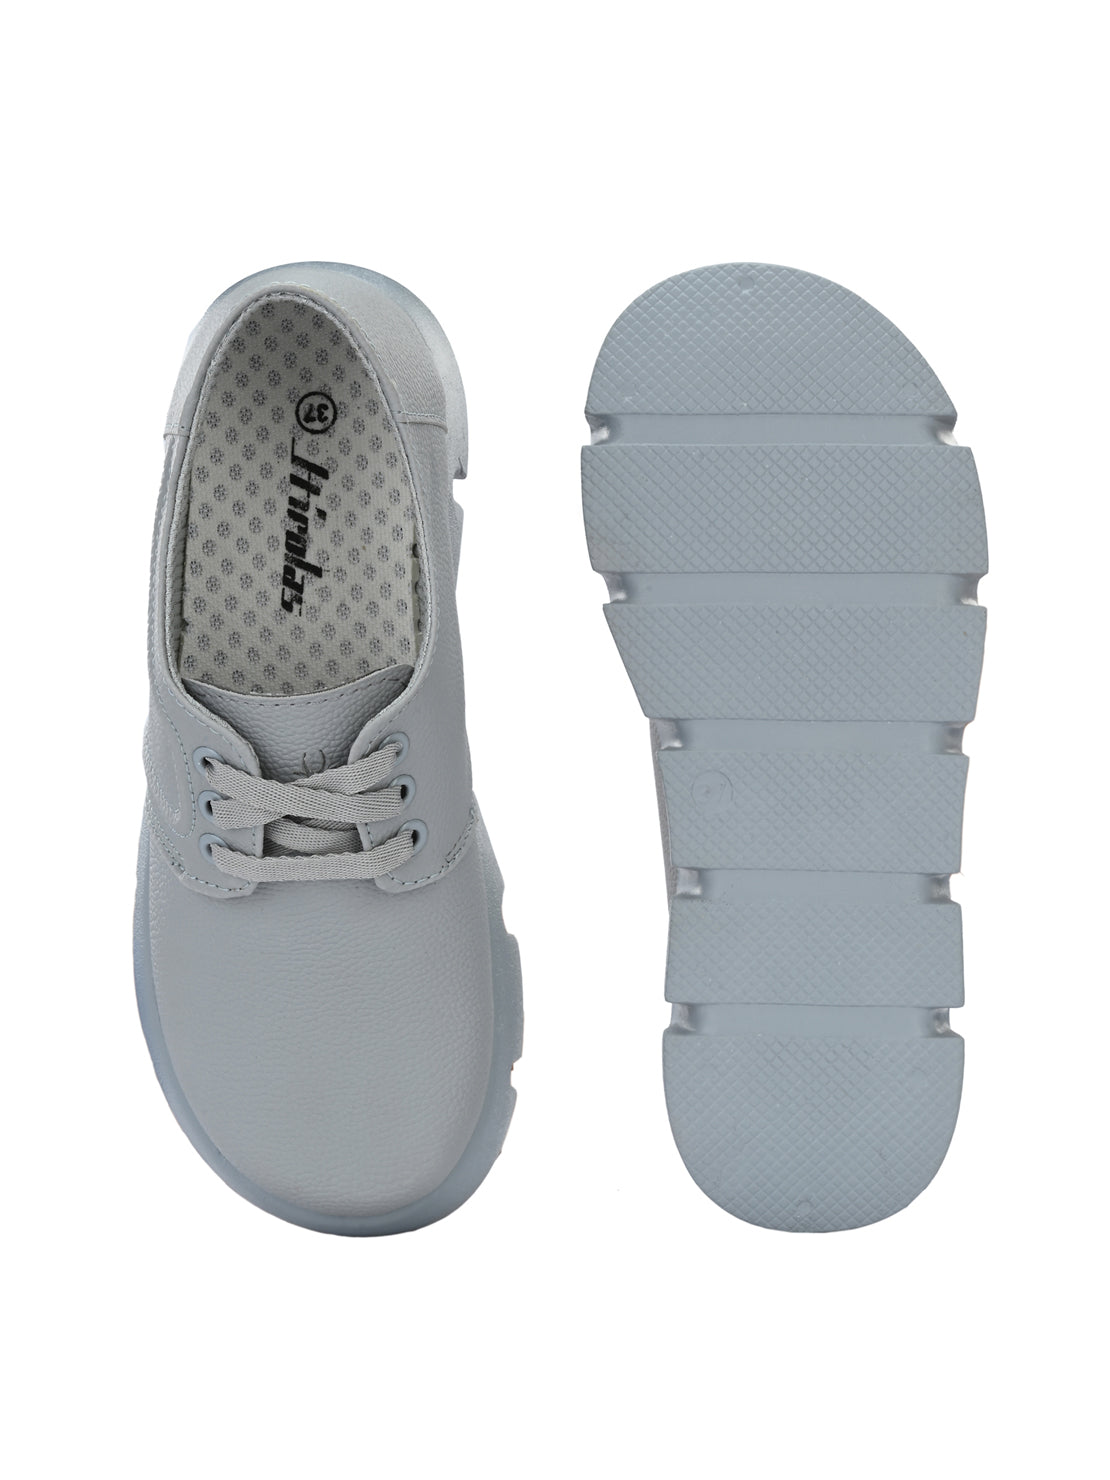 Hirolas® Women Chunky Casual Sneaker Shoes - Grey